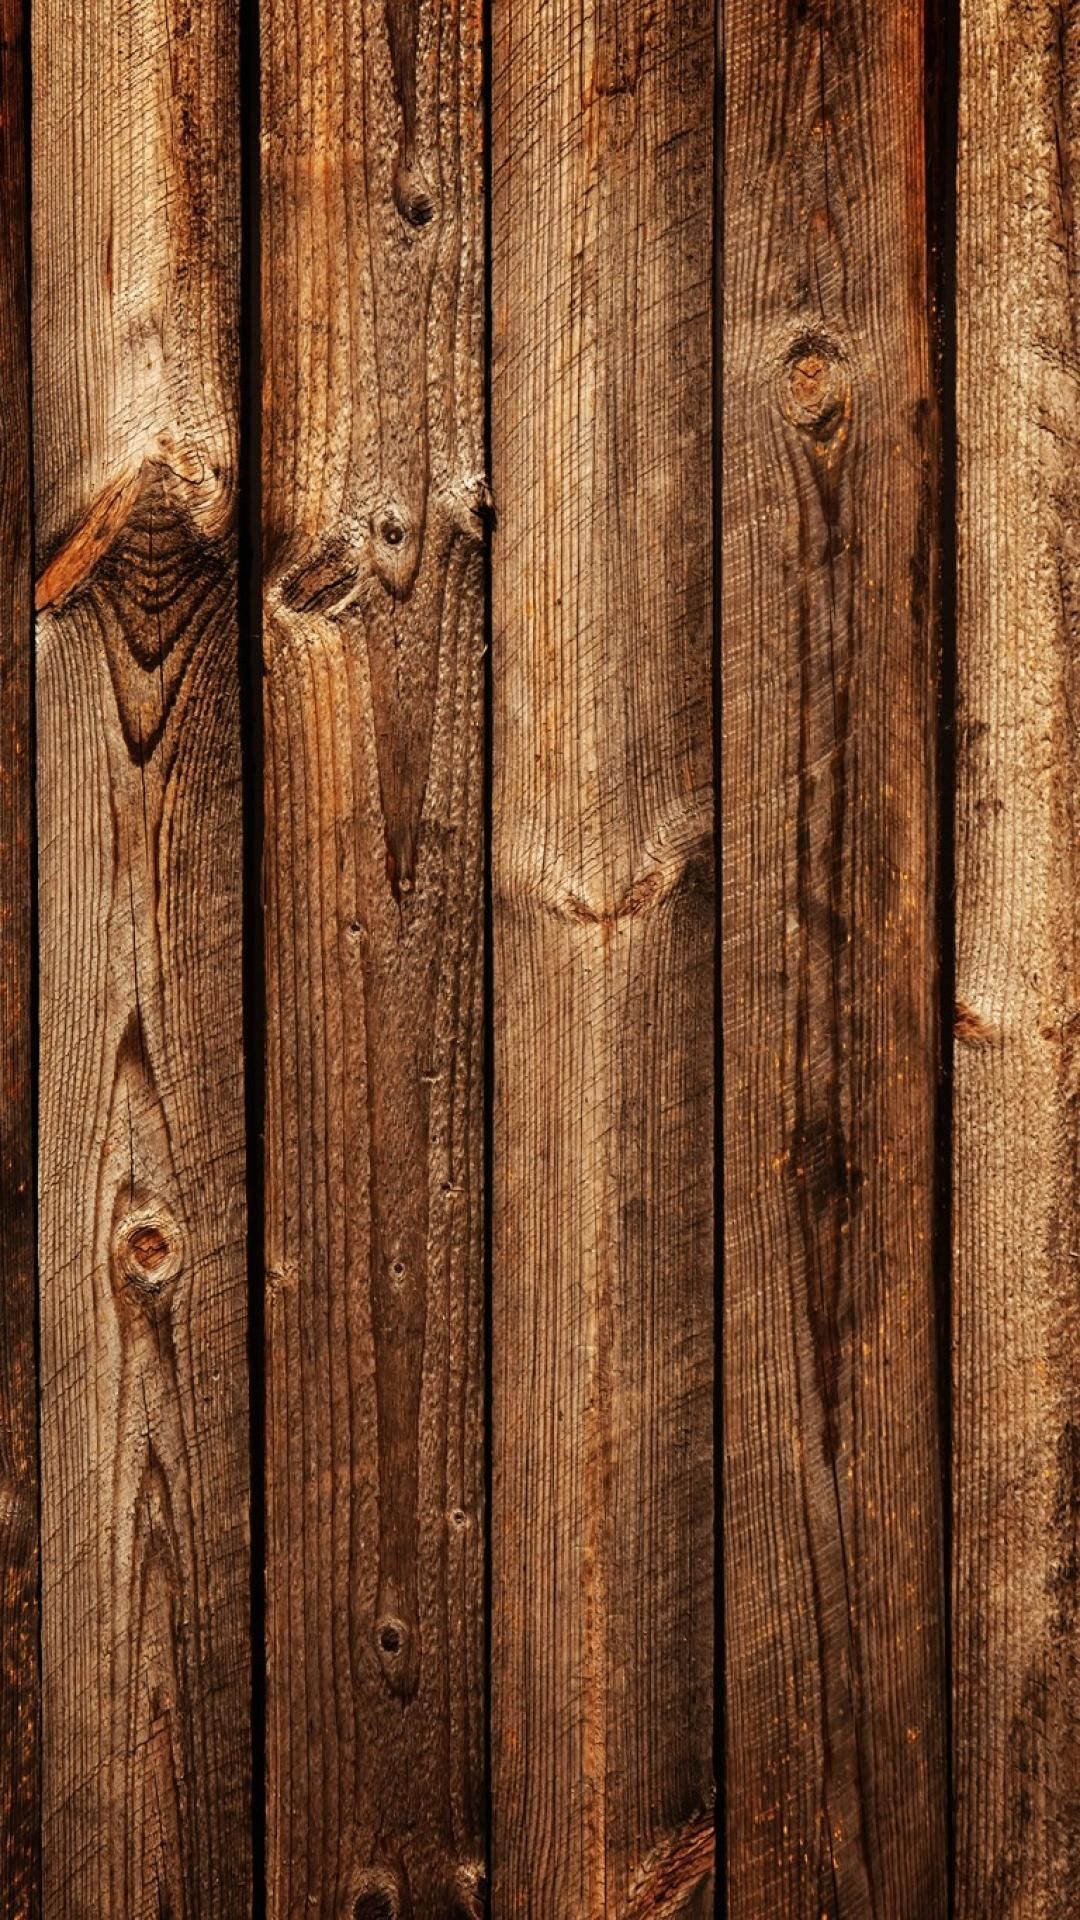 Gỗ là chất liệu vô cùng đa dạng và đẹp mắt. Nếu bạn yêu thích sự đặc biệt và muốn áp dụng nó vào không gian trang trí nhà cửa của mình, hãy vào xem những hình ảnh về các loại giấy dán tường gỗ đầy sức hút và đa dạng ở đây!